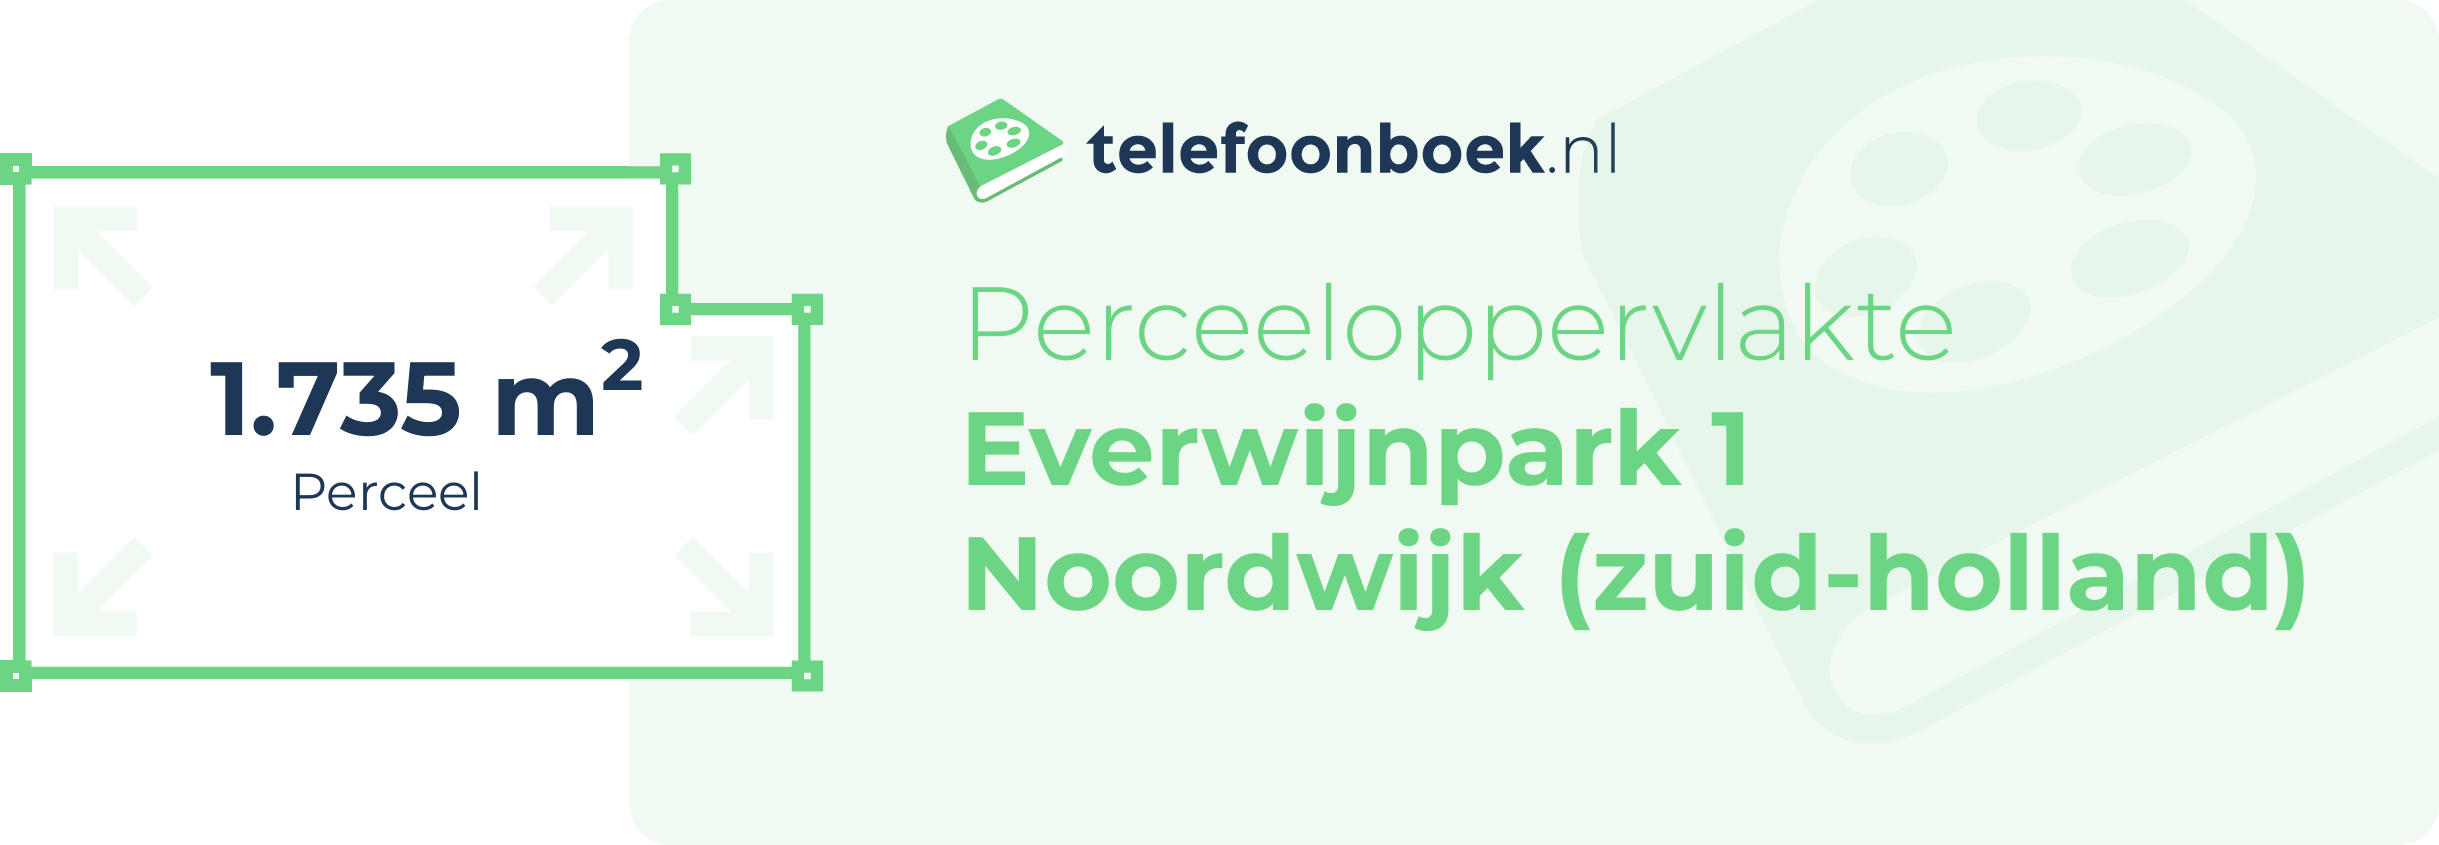 Perceeloppervlakte Everwijnpark 1 Noordwijk (Zuid-Holland)